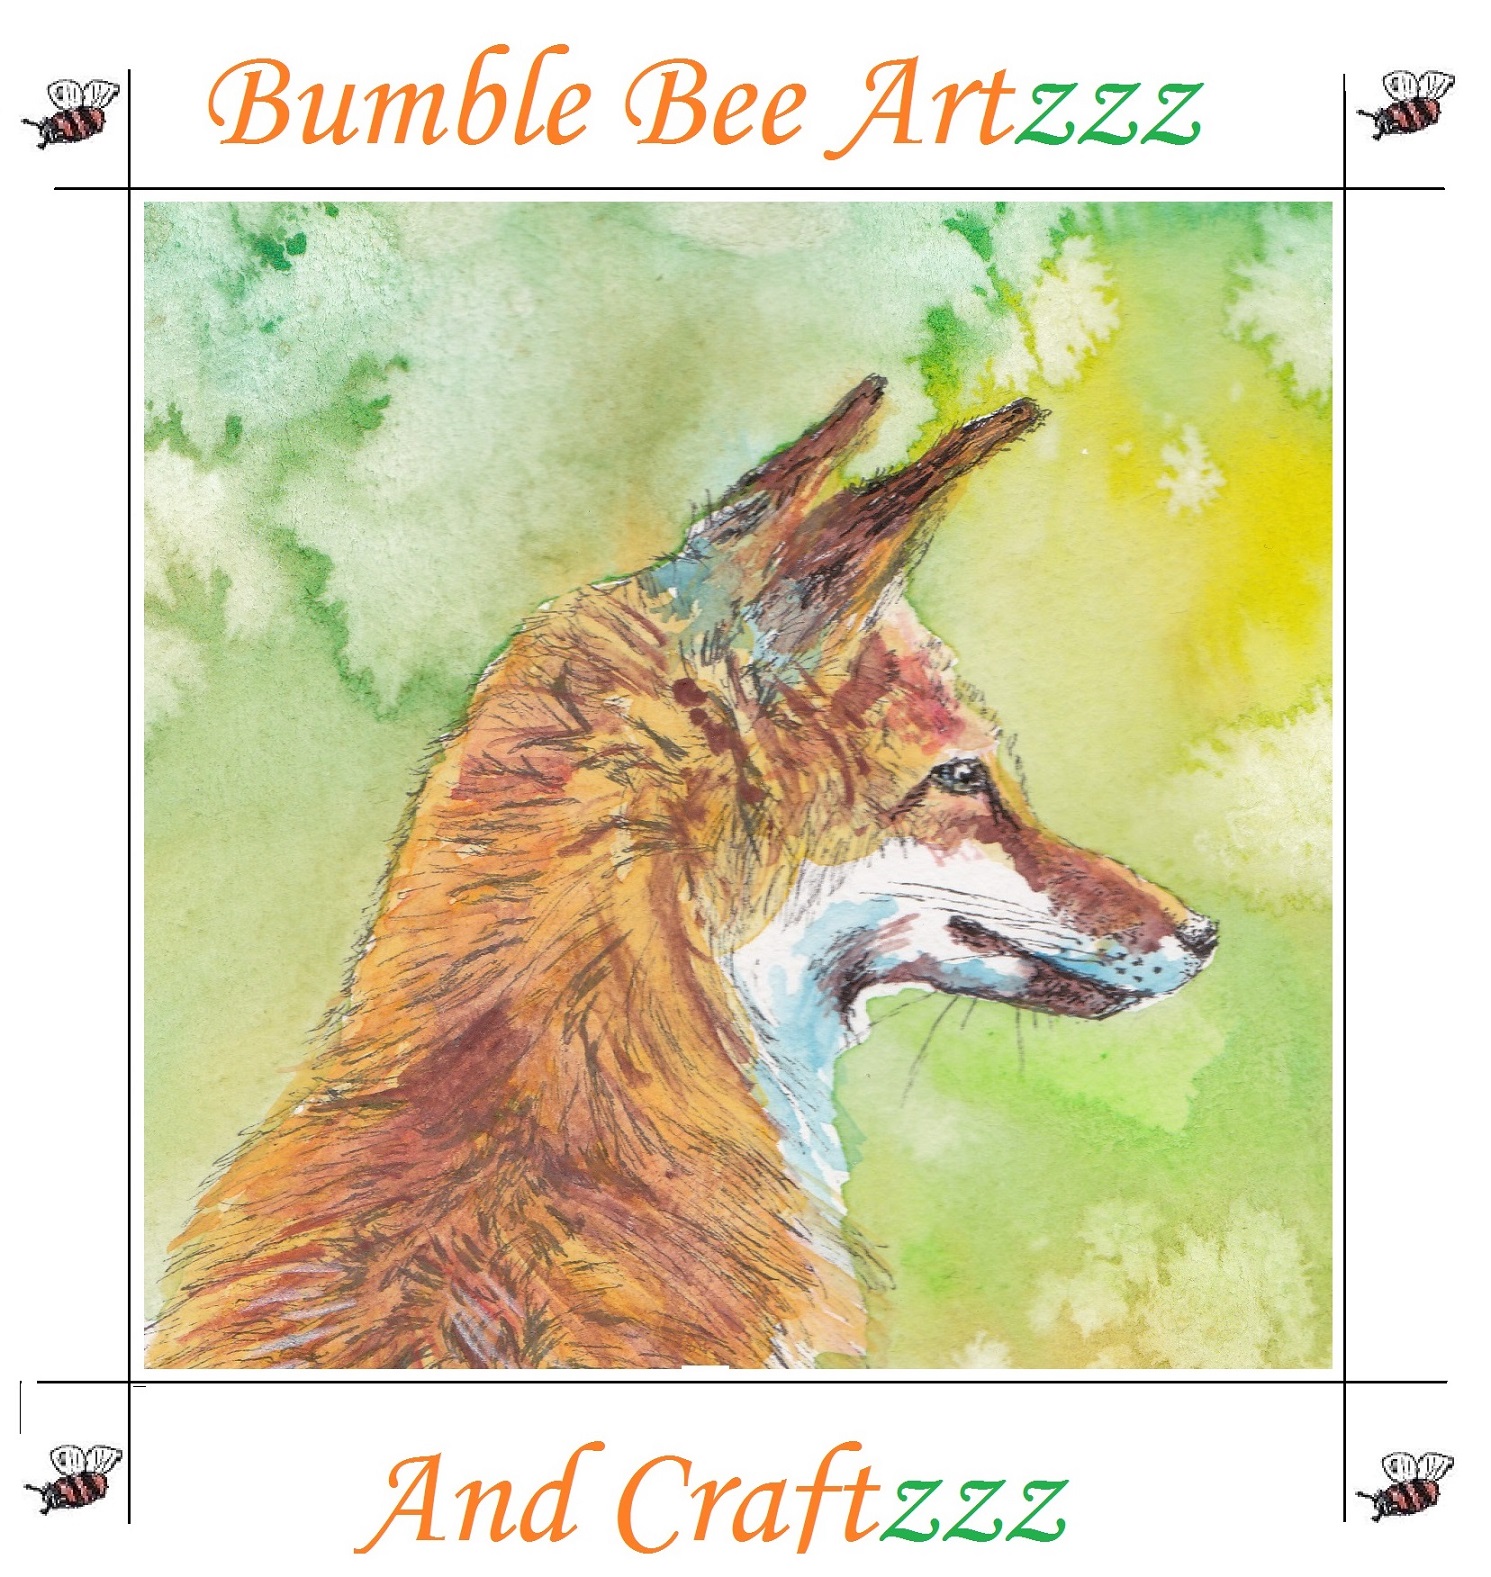 Bumble Bee Artzzz